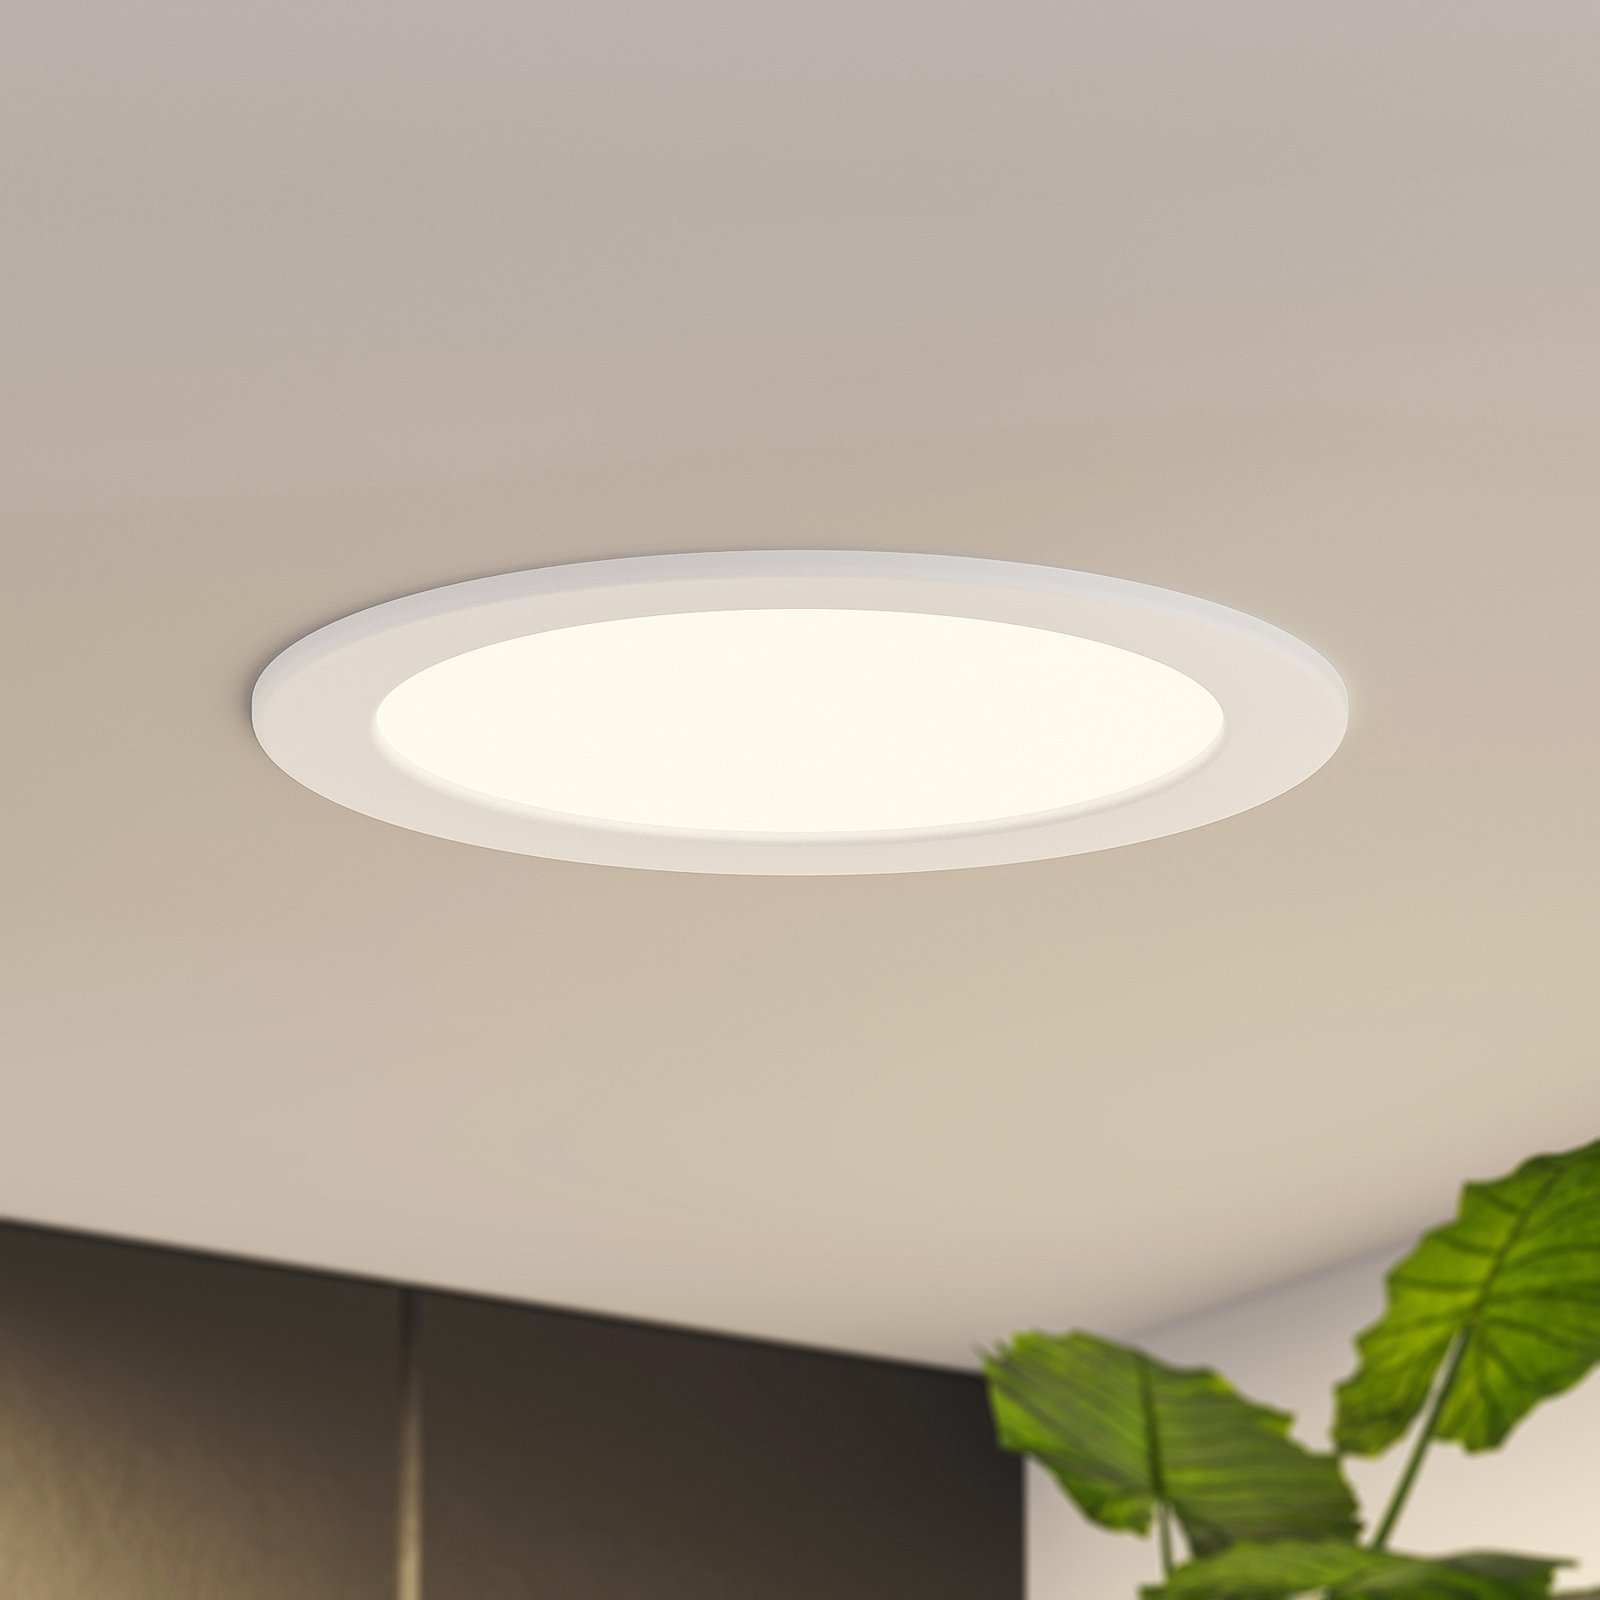 Prios Cadance LED-Einbaulampe, weiß, 22 cm